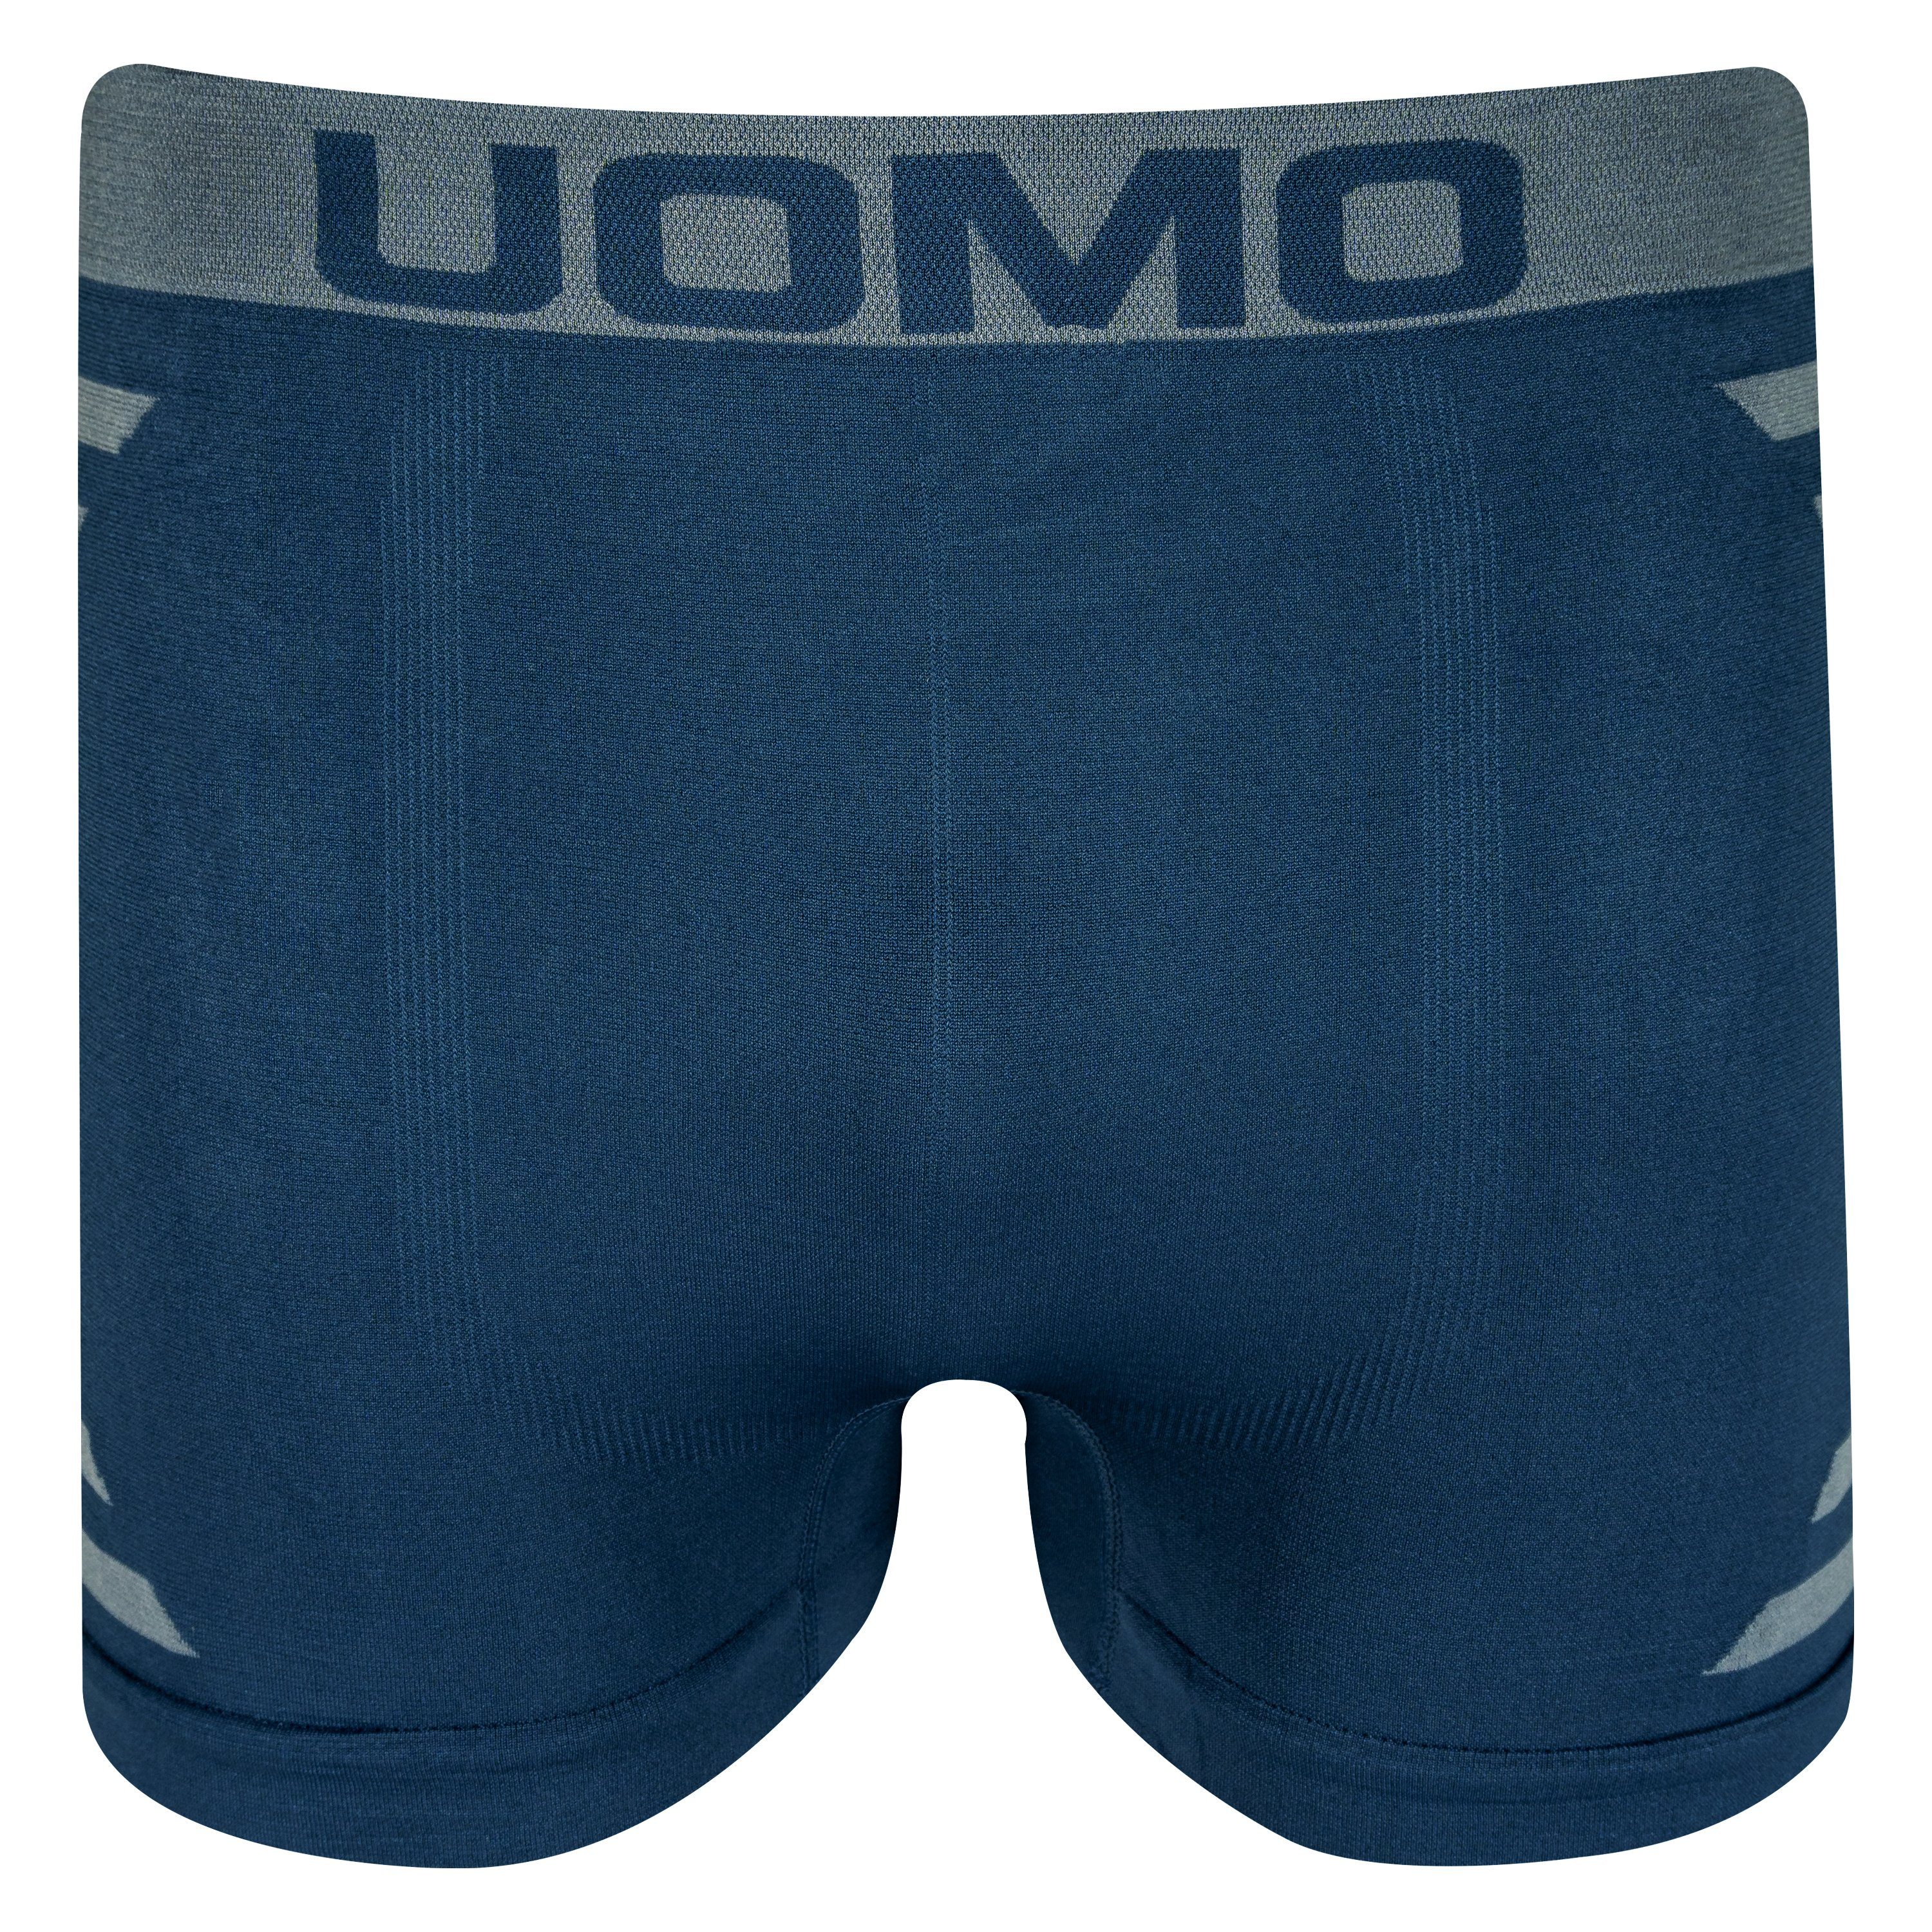 TEXEMP Boxershorts 10er Pack Herren Microfaser Seamless Shorts Trunks Unterwäsche Retroshorts (Packung, Unterhose Boxershorts Boxer 10er-Pack) XL/XXL M/L